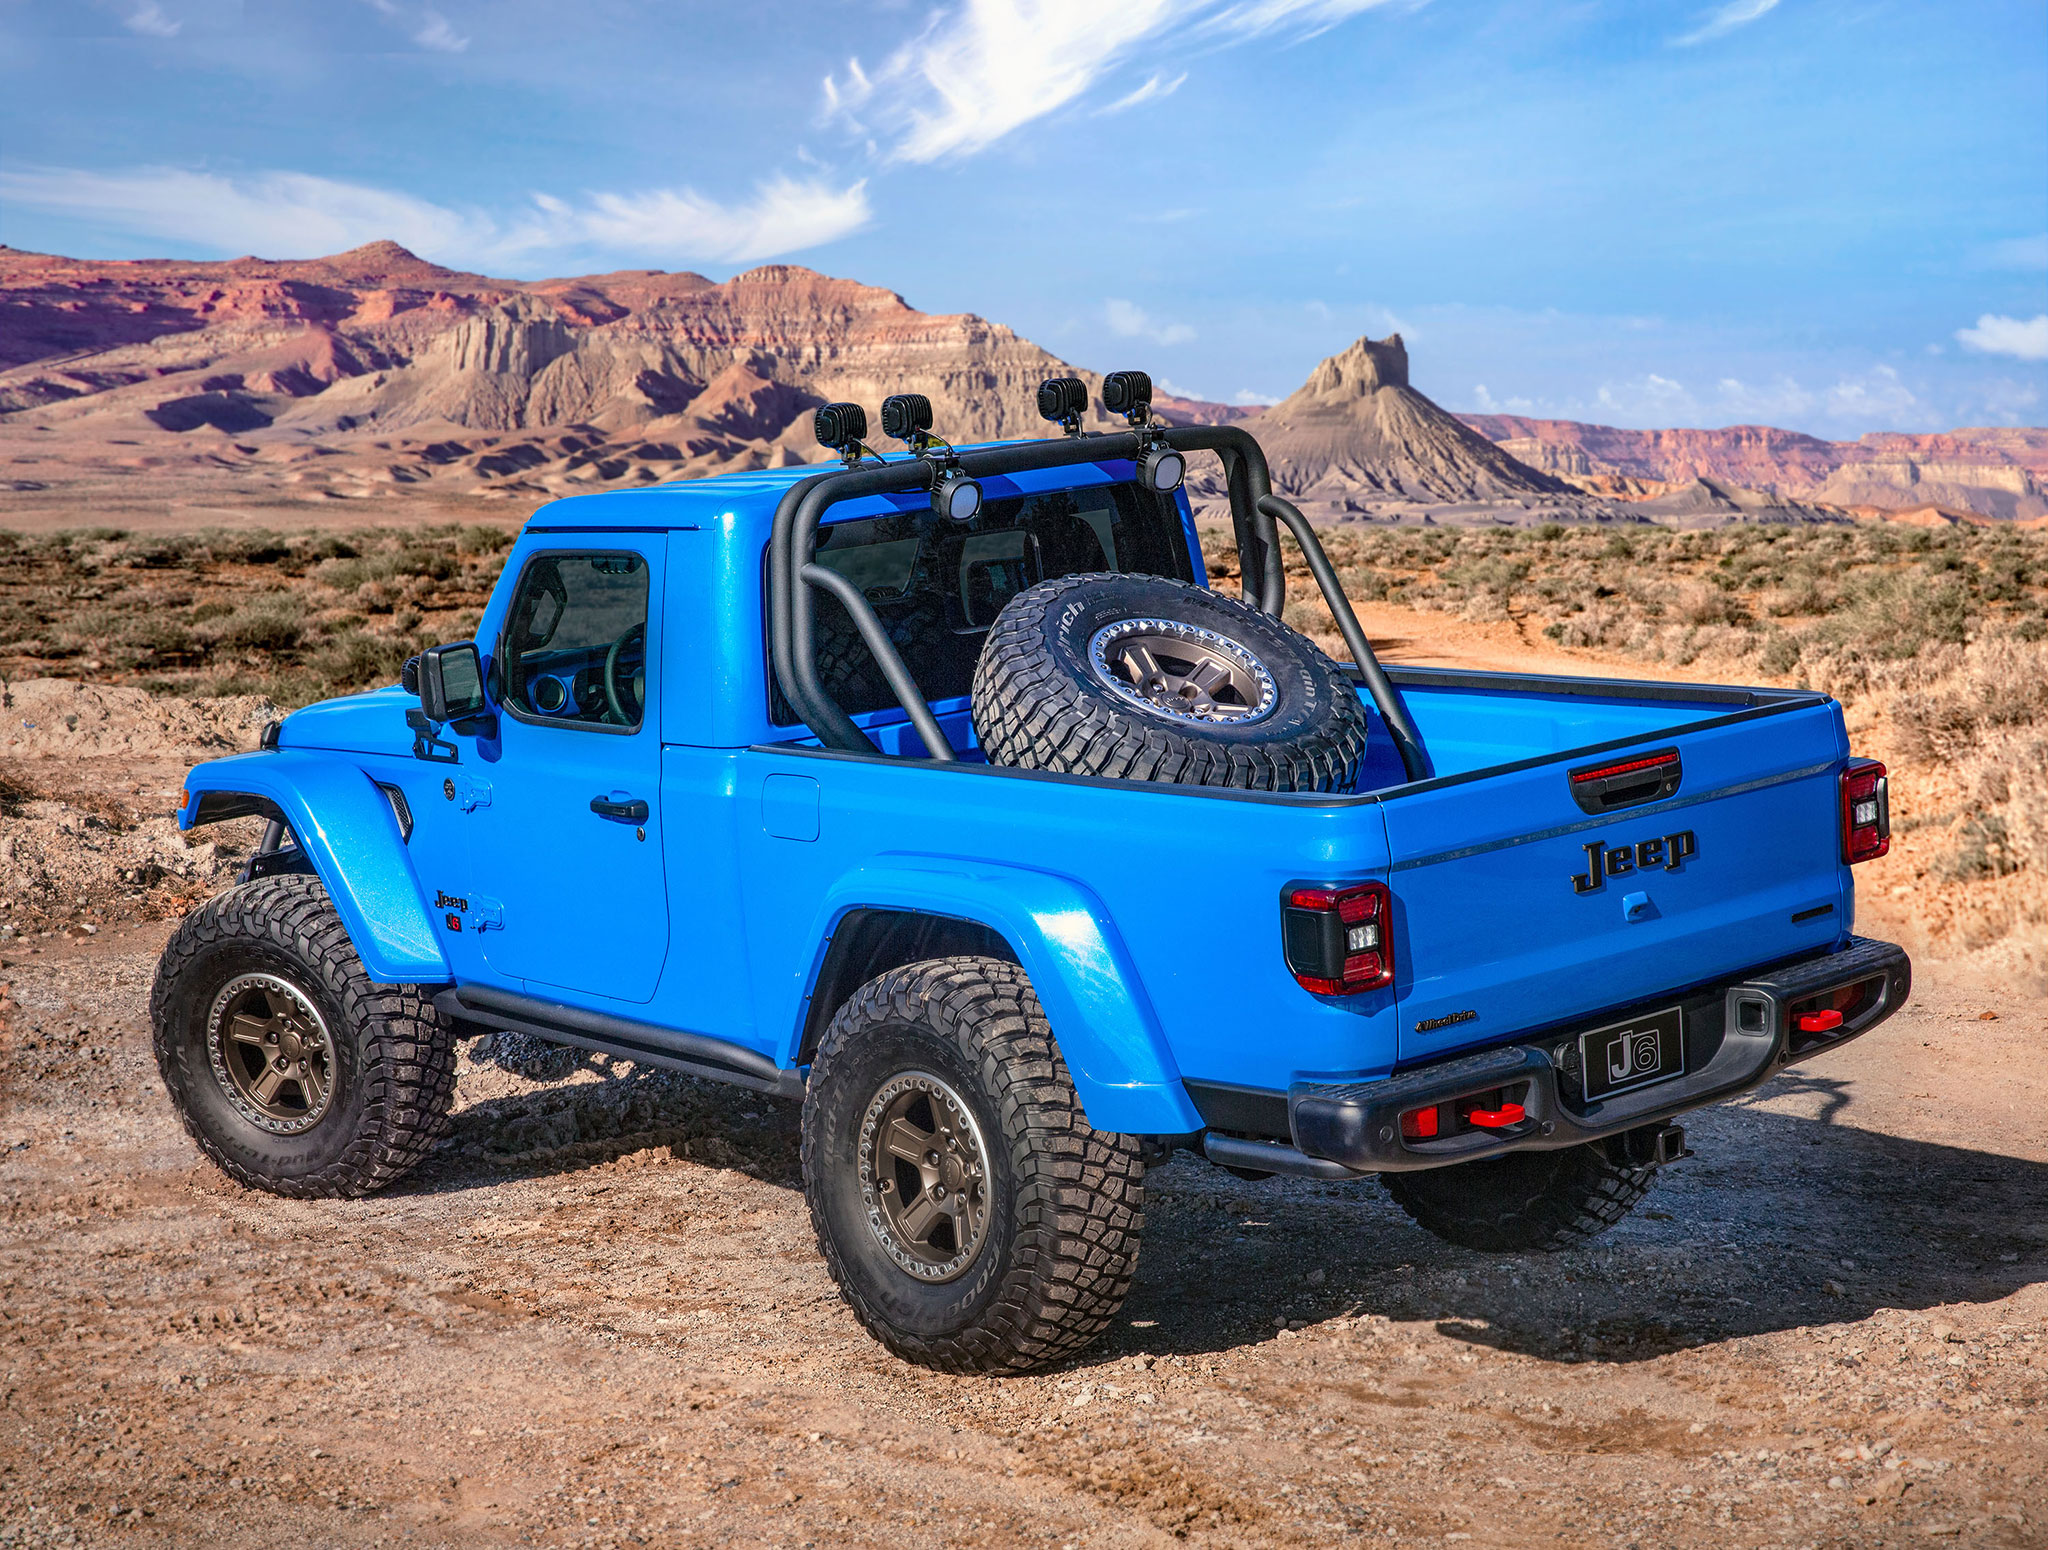 2019 Jeep J6 porte-roue spécifique pour le pneu en 37 pouces - Moab Easter Jeep Safari.